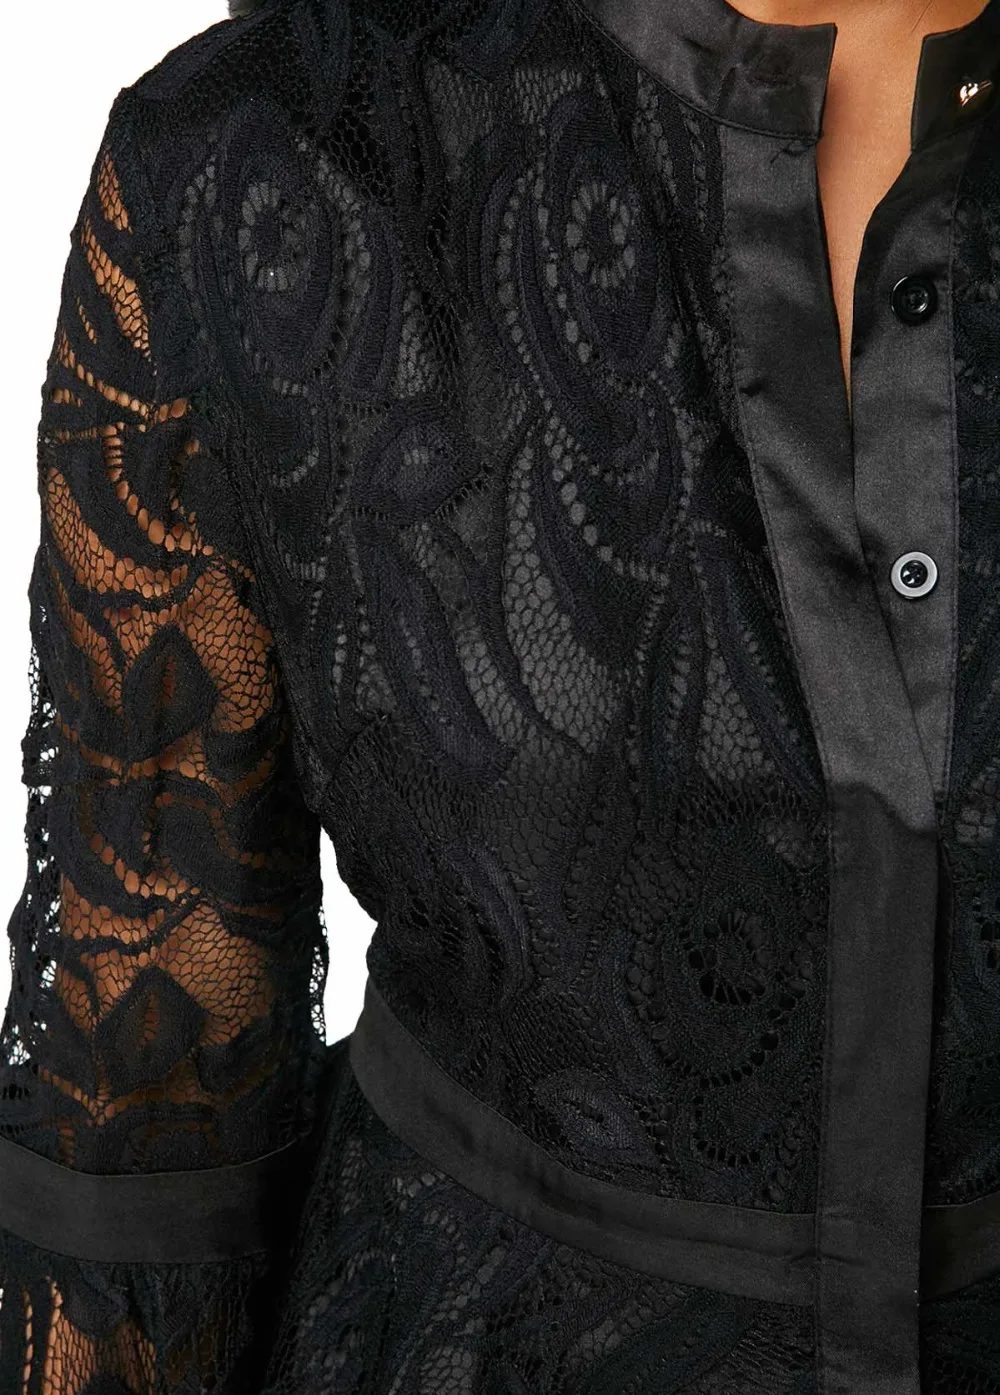 Горячая Распродажа, Женская кружевная рубашка, весна-лето, модная черная Лоскутная кружевная Сексуальная Блузка с расклешенными рукавами, рубашка размера плюс, одежда